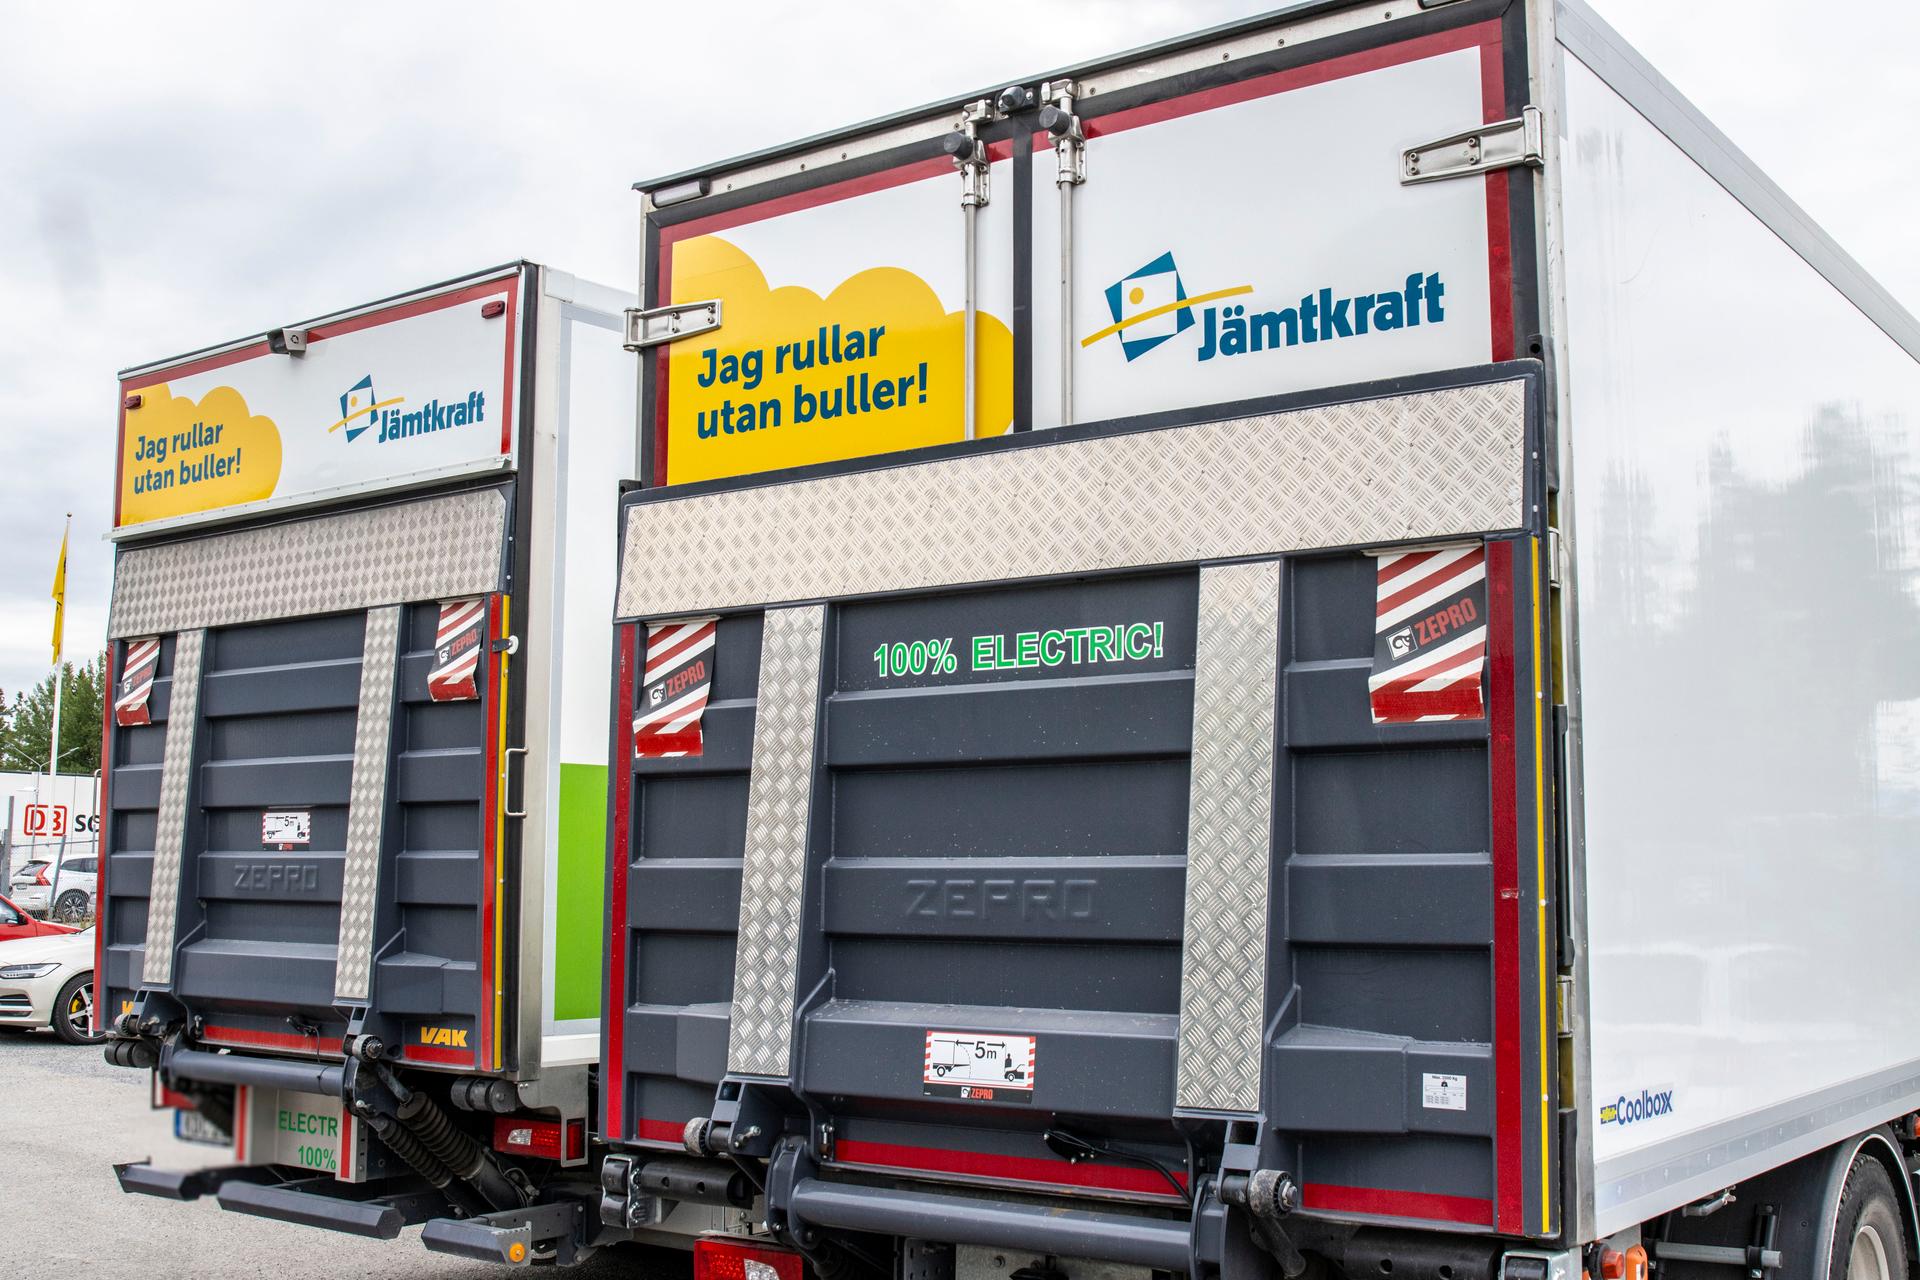 Sandberg & Jonssons två första lastbilar med Jämtkrafts reklambudskap.